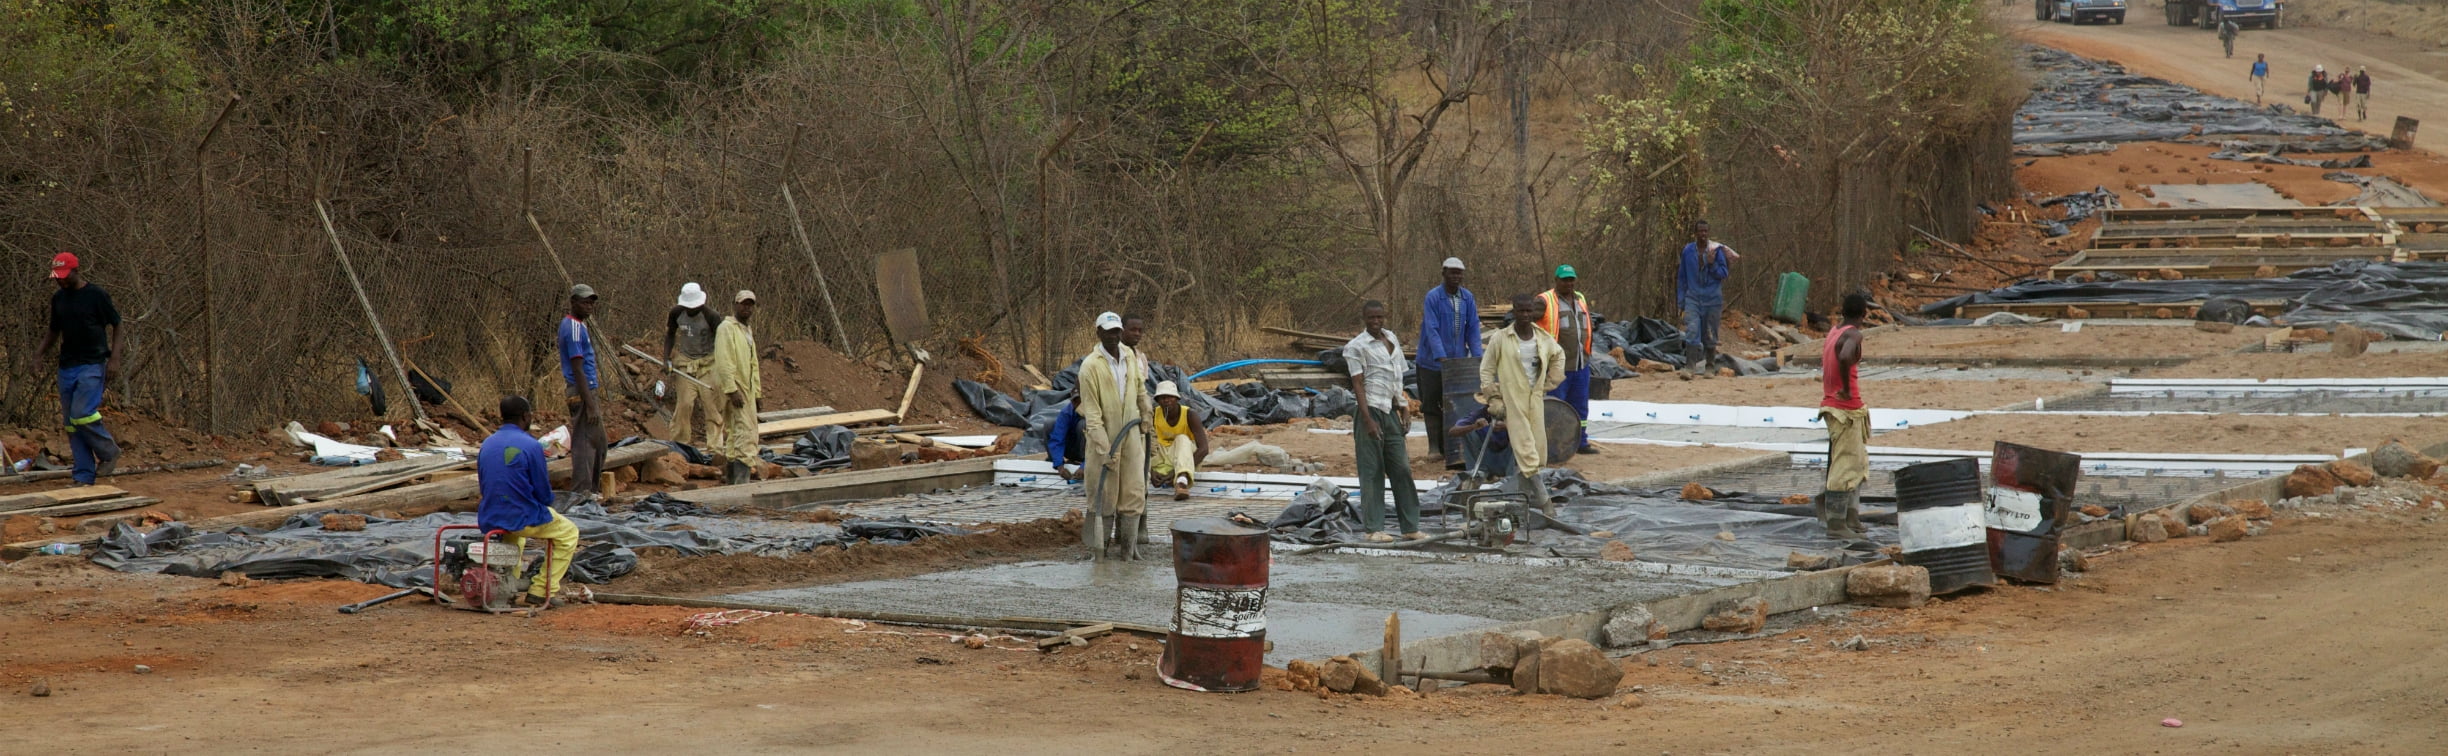 Wegwerkers in Zimbabwe (foto: David Brossard)